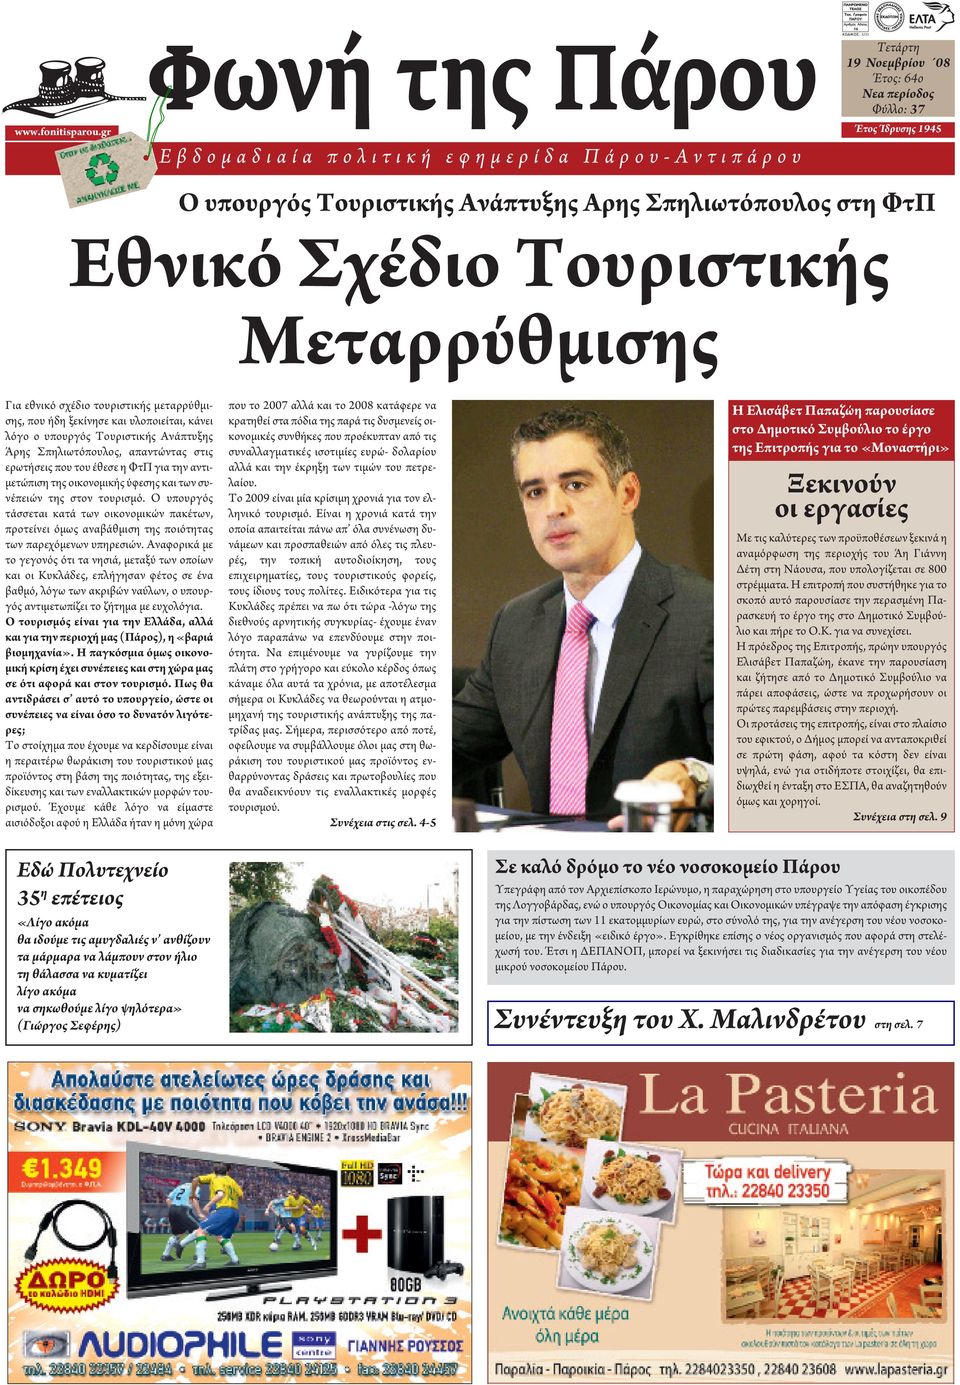 Ανάπτυξης Αρης Σπηλιωτόπουλος στη ΦτΠ Εθνικό Σχέδιο Τουριστικής Μεταρρύθμισης Για εθνικό σχέδιο τουριστικής μεταρρύθμισης, που ήδη ξεκίνησε και υλοποιείται, κάνει λόγο ο υπουργός Τουριστικής